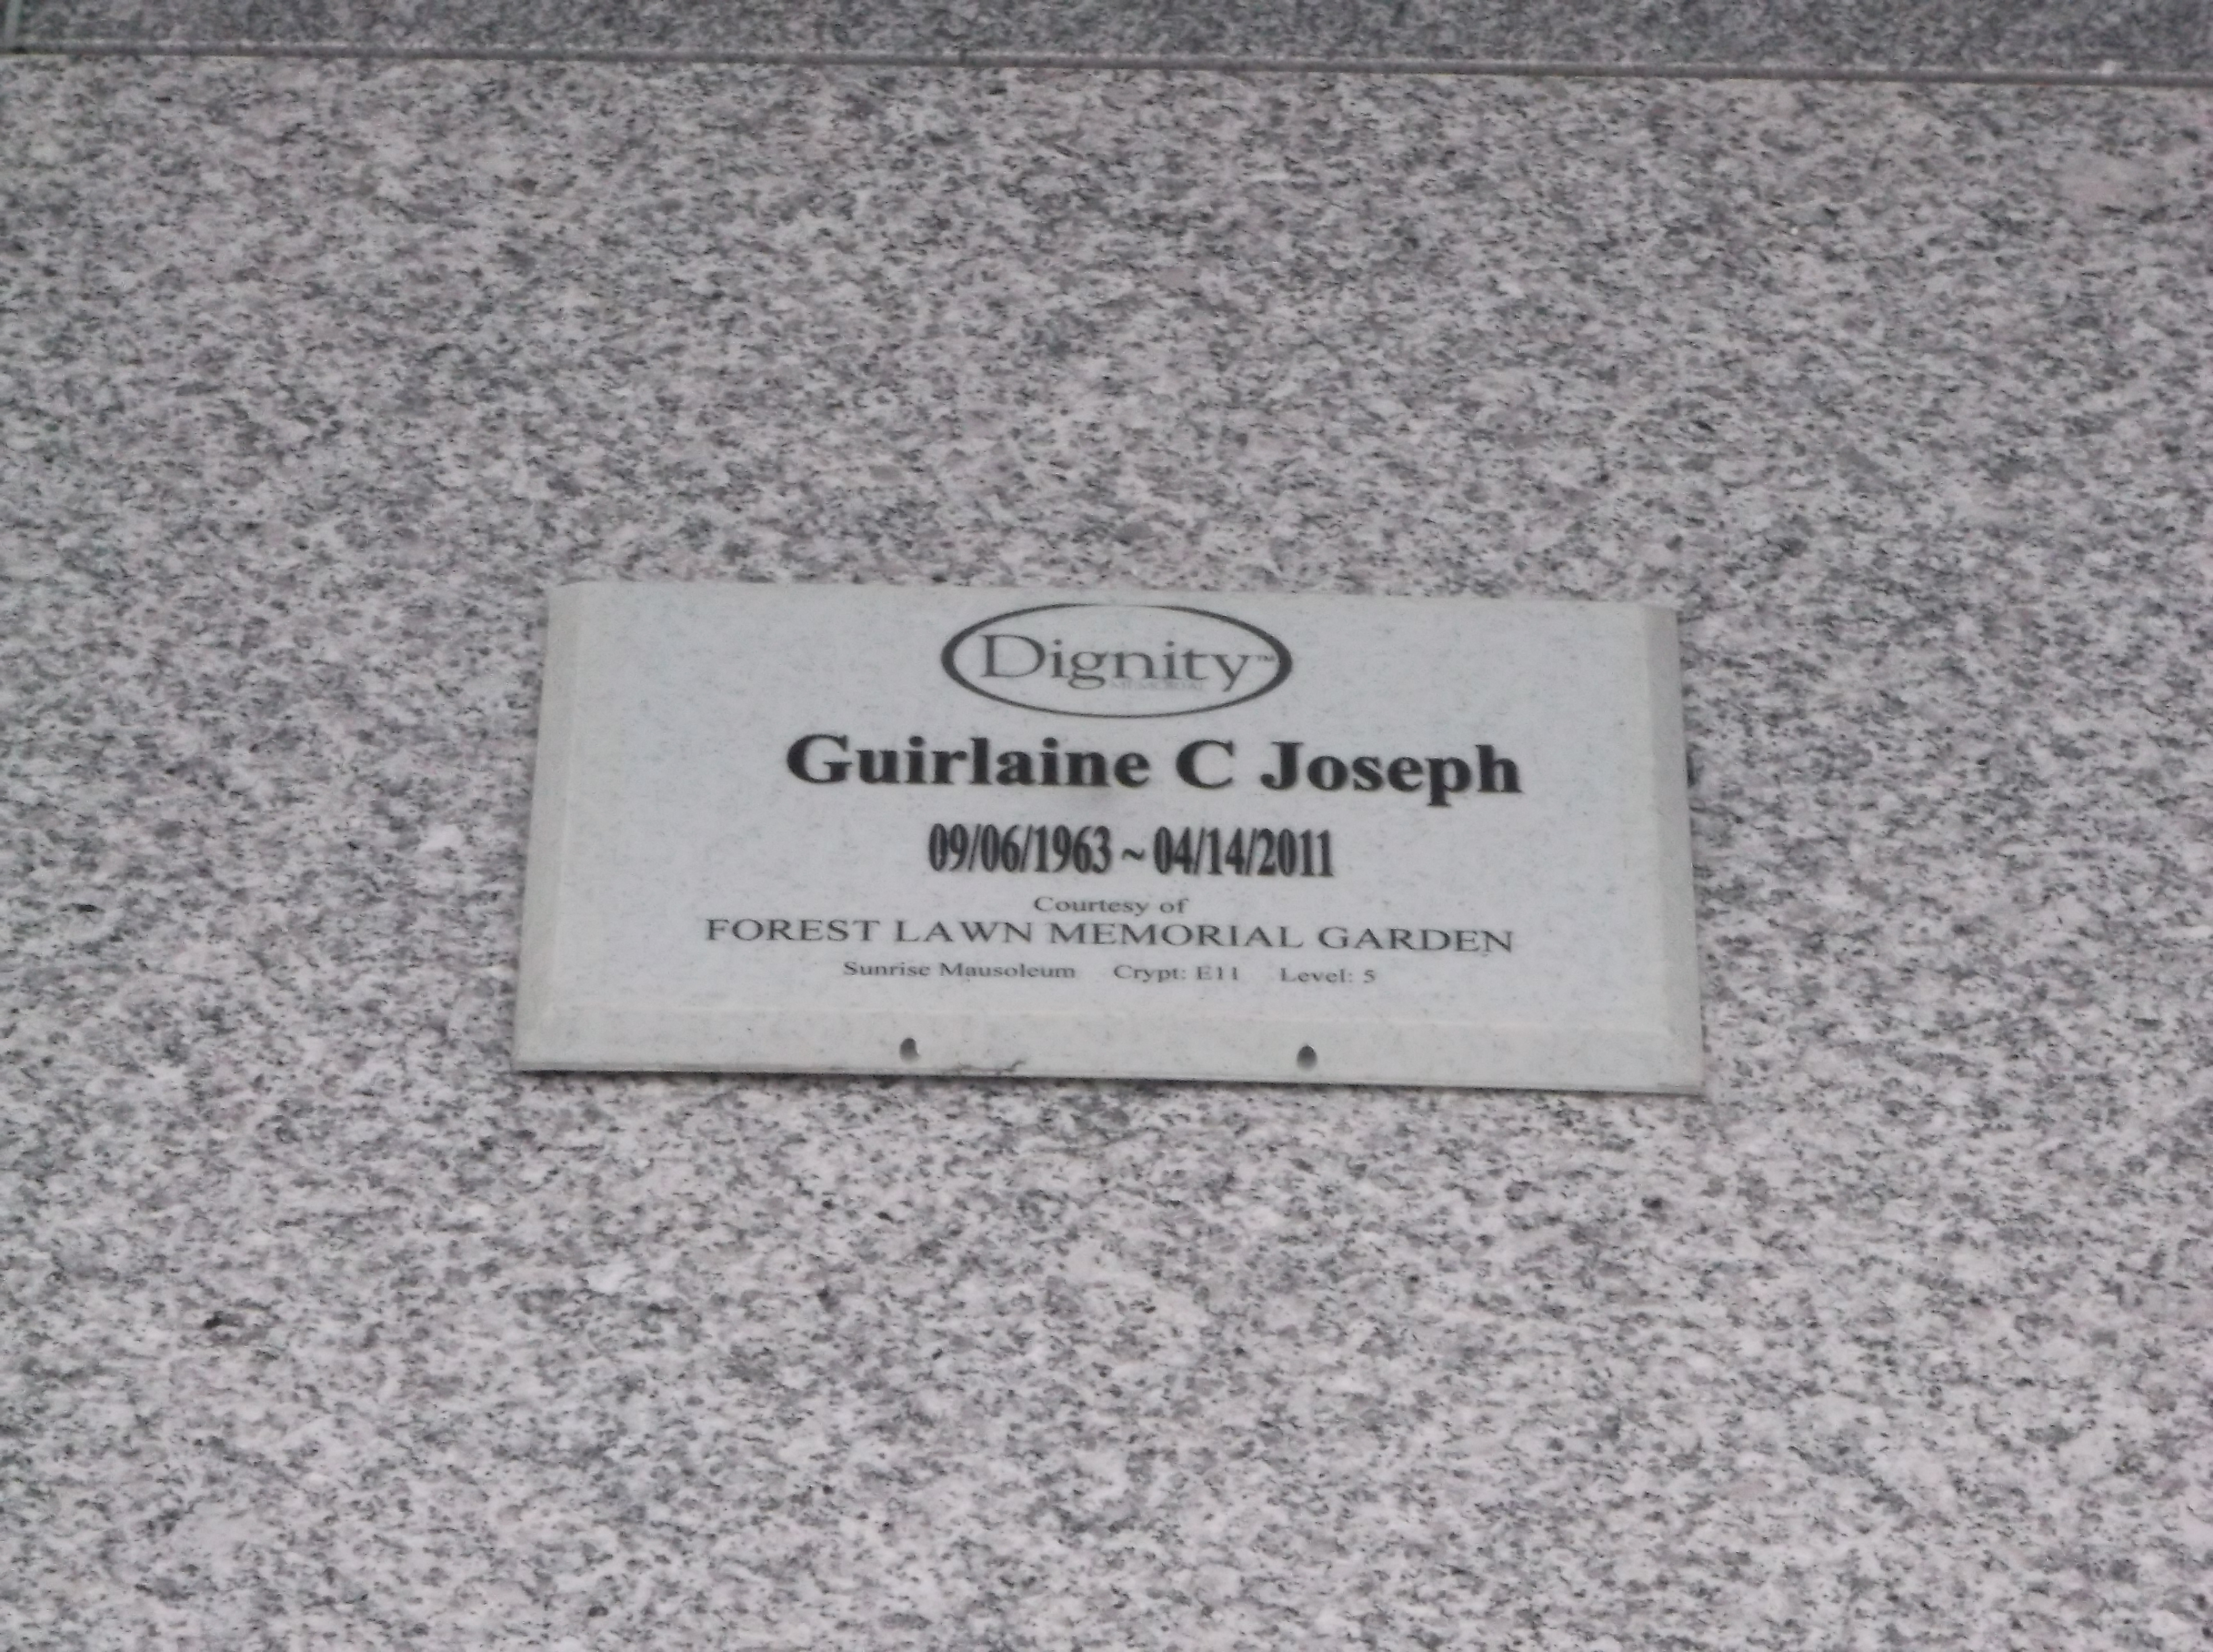 Guirlaine C Joseph